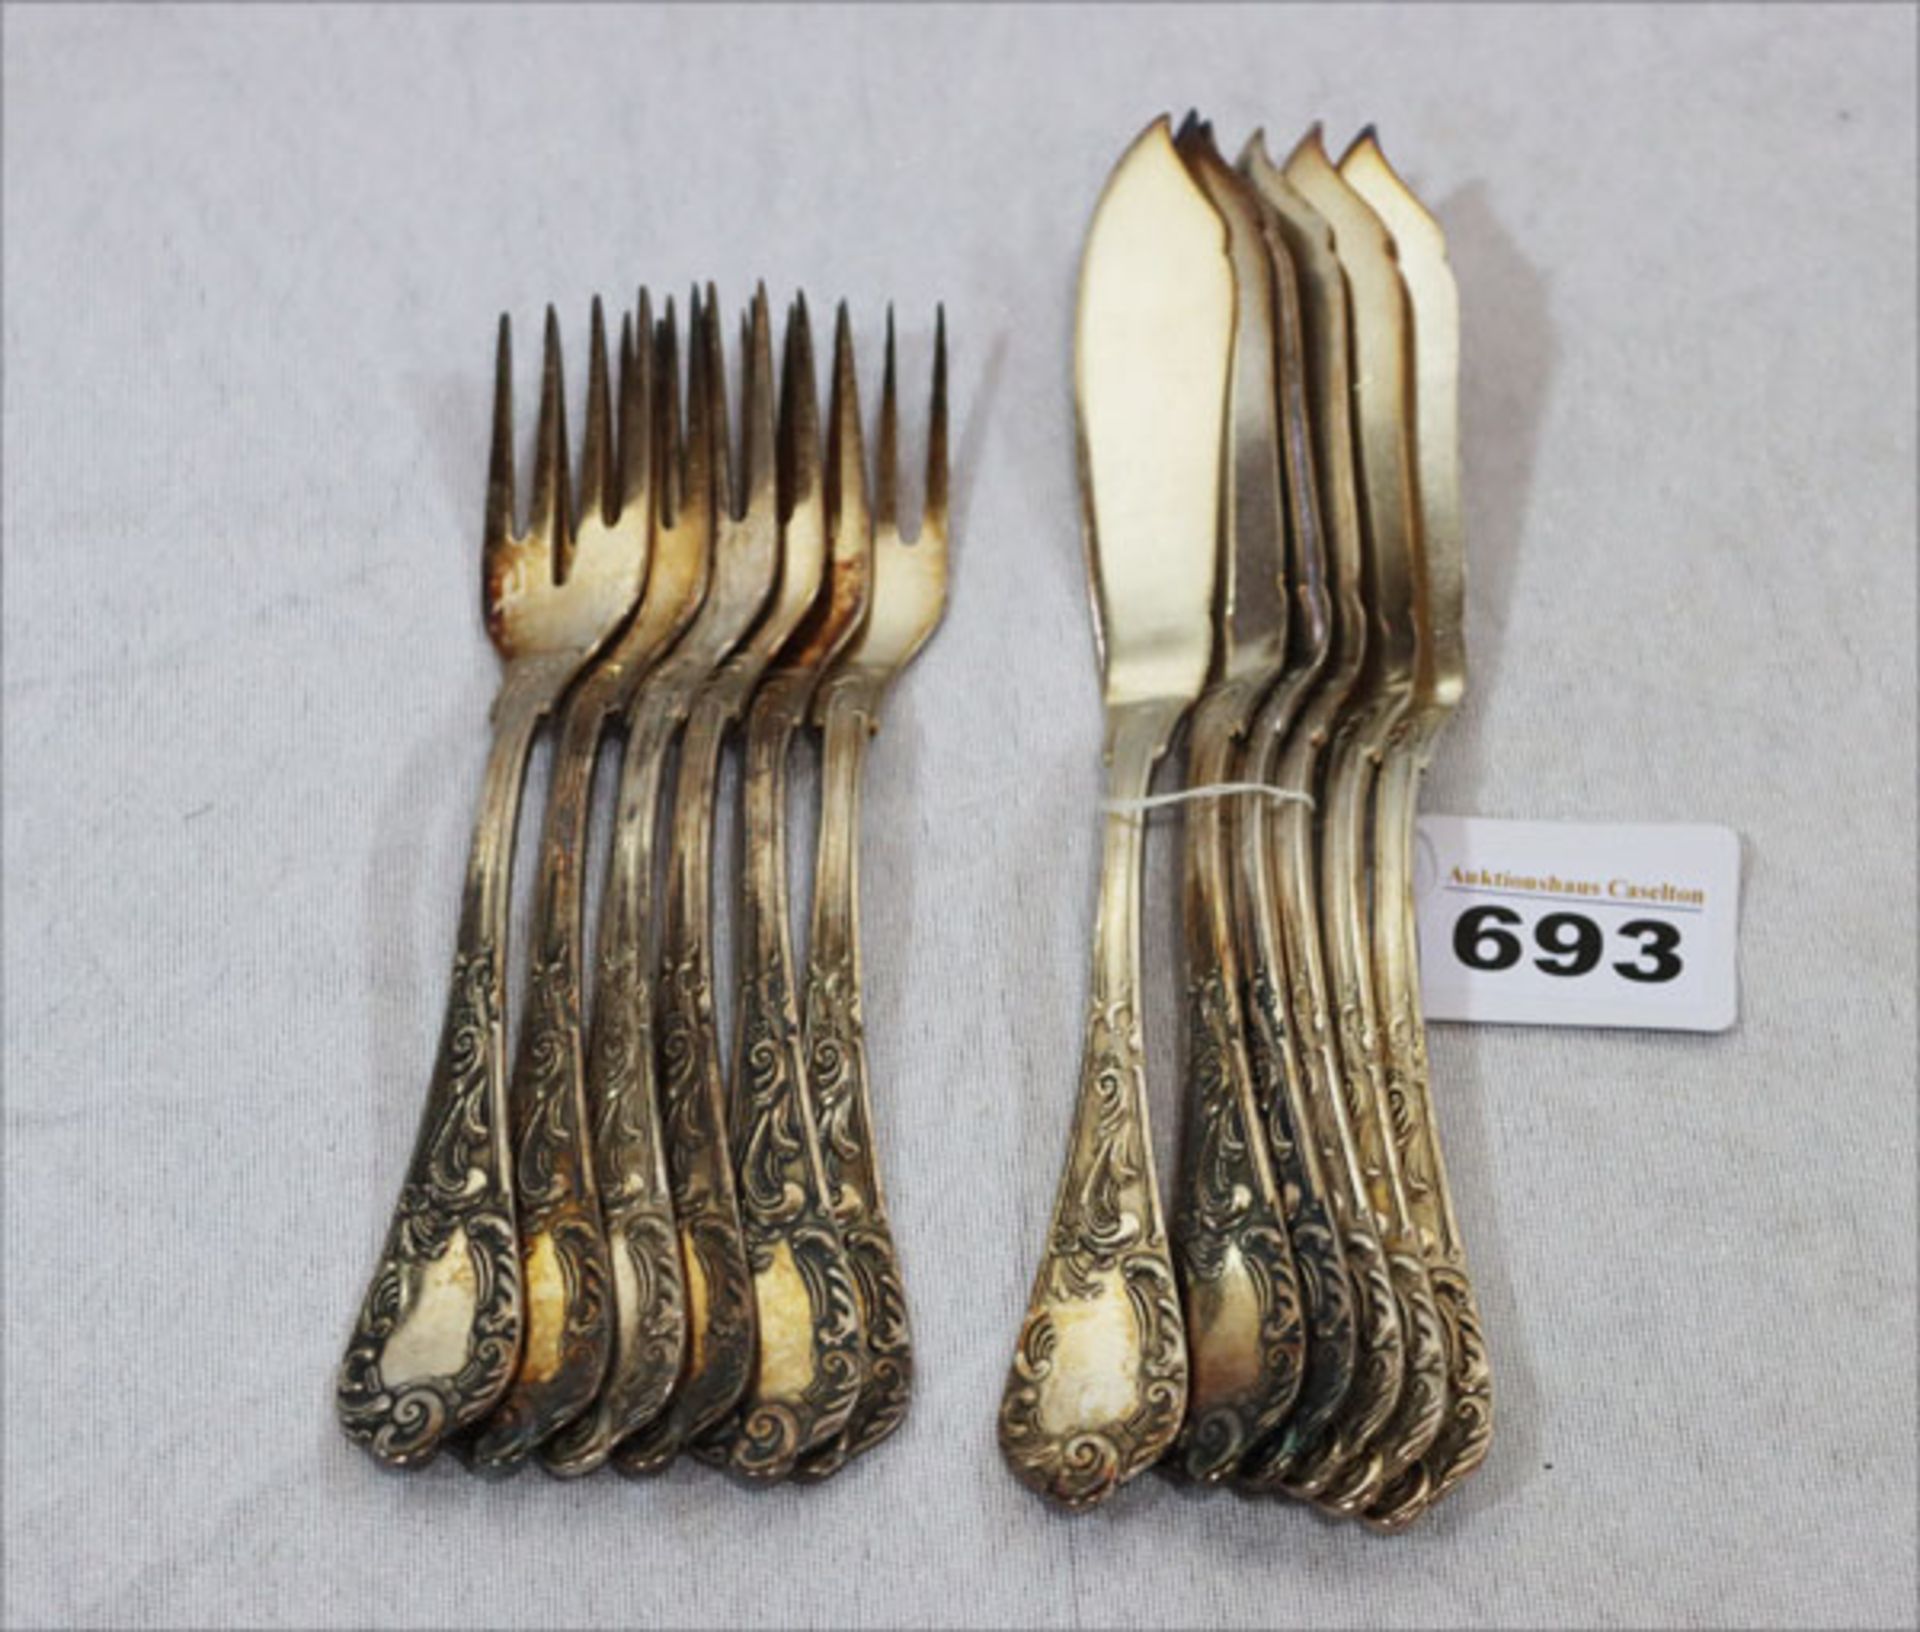 Fischbesteck: 6 Gabeln und 6 Messer mit Reliefdekor, versilbert, Gebrauchsspuren